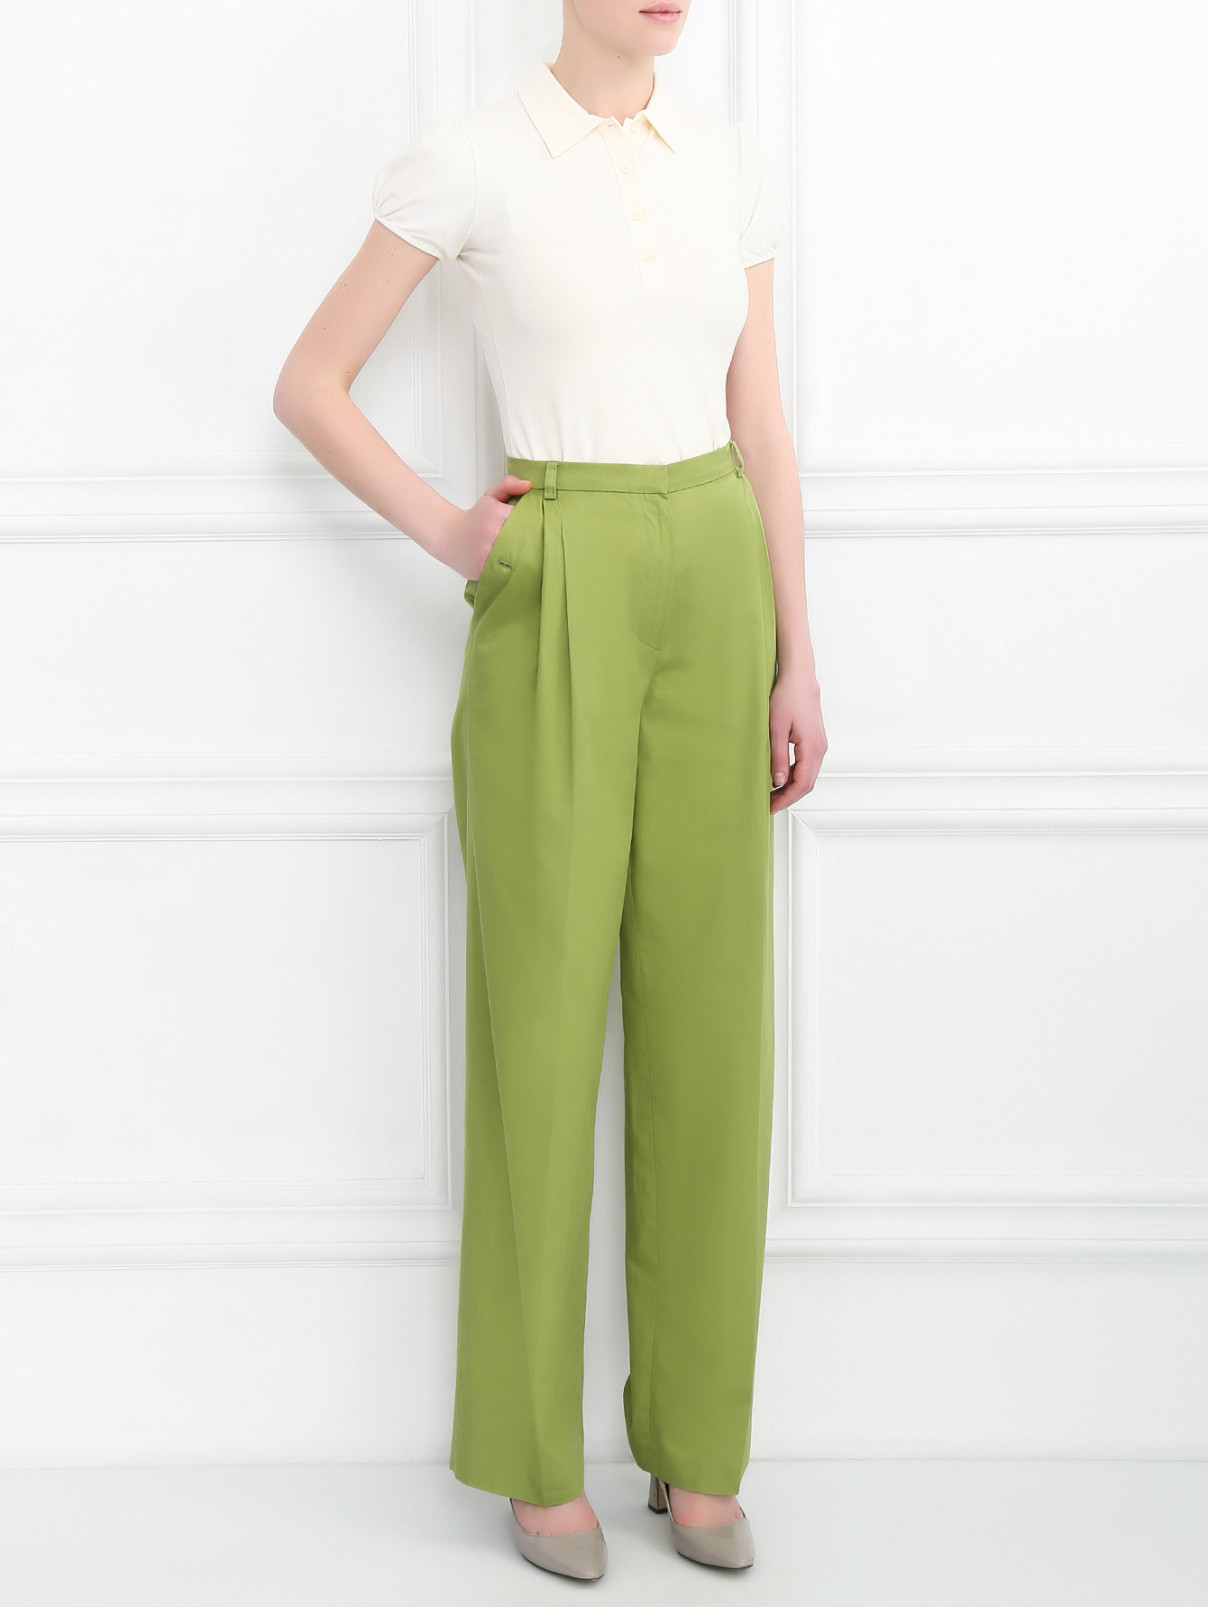 Широкие брюки из хлопка с защипами Antonio Marras  –  Модель Общий вид  – Цвет:  Зеленый